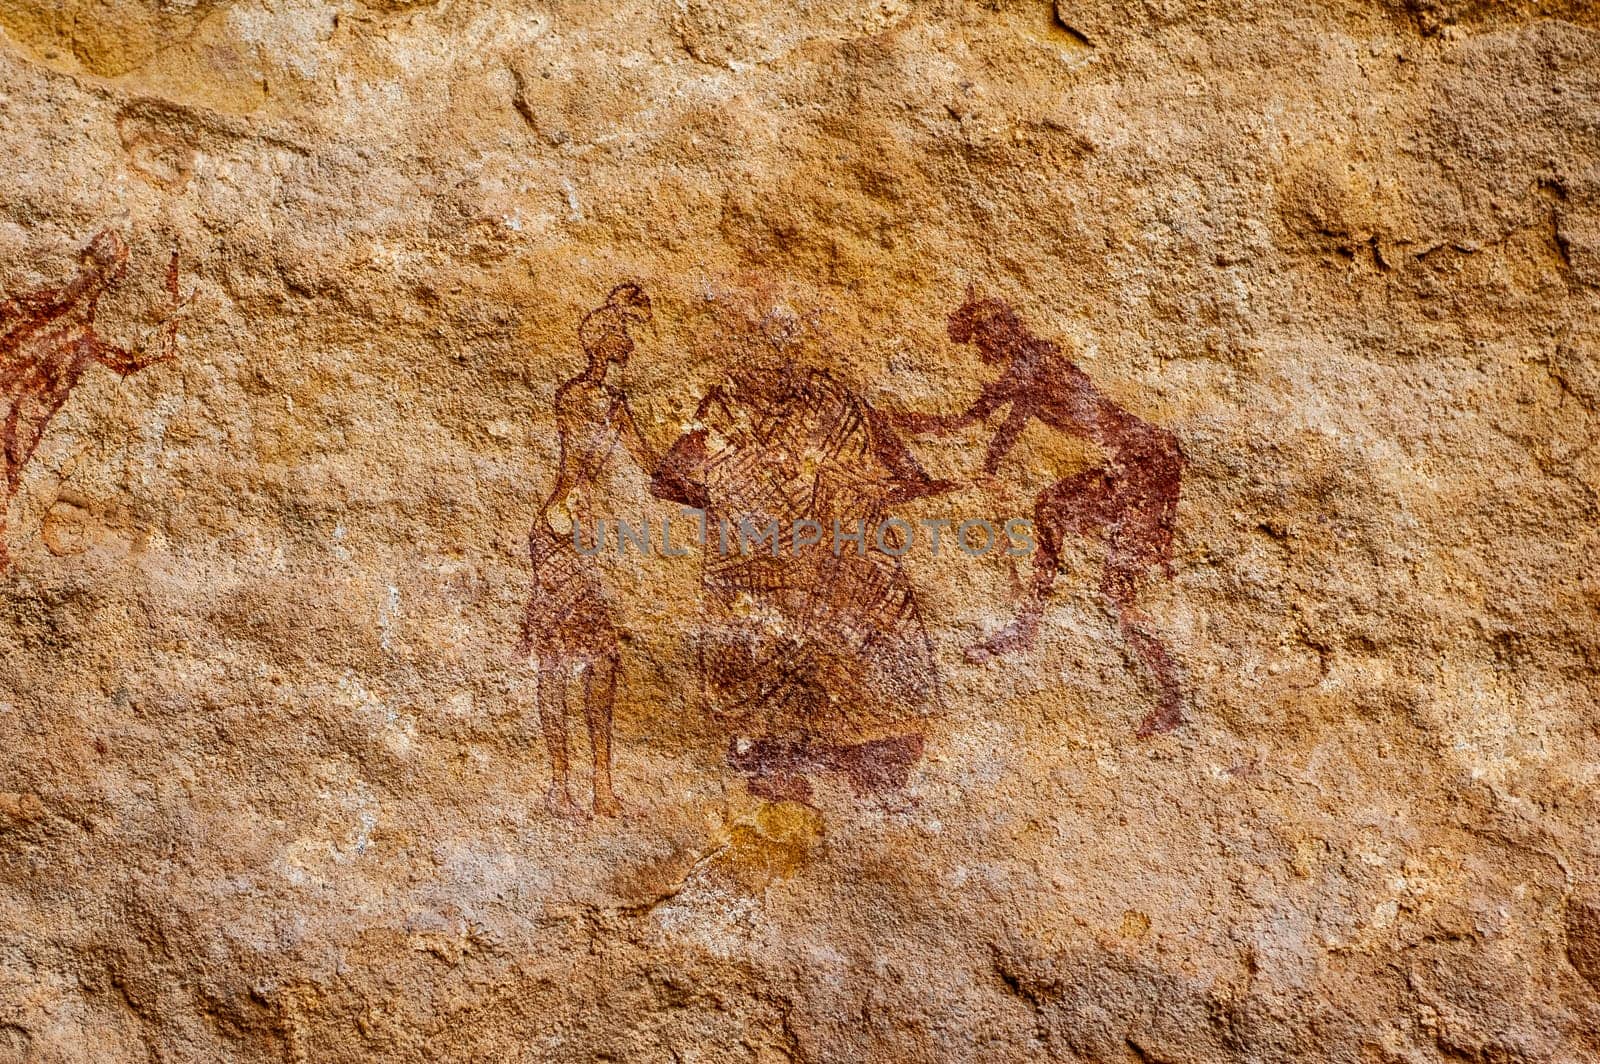 Prehistoric Petroglyphs in libian sahara desert by Giamplume